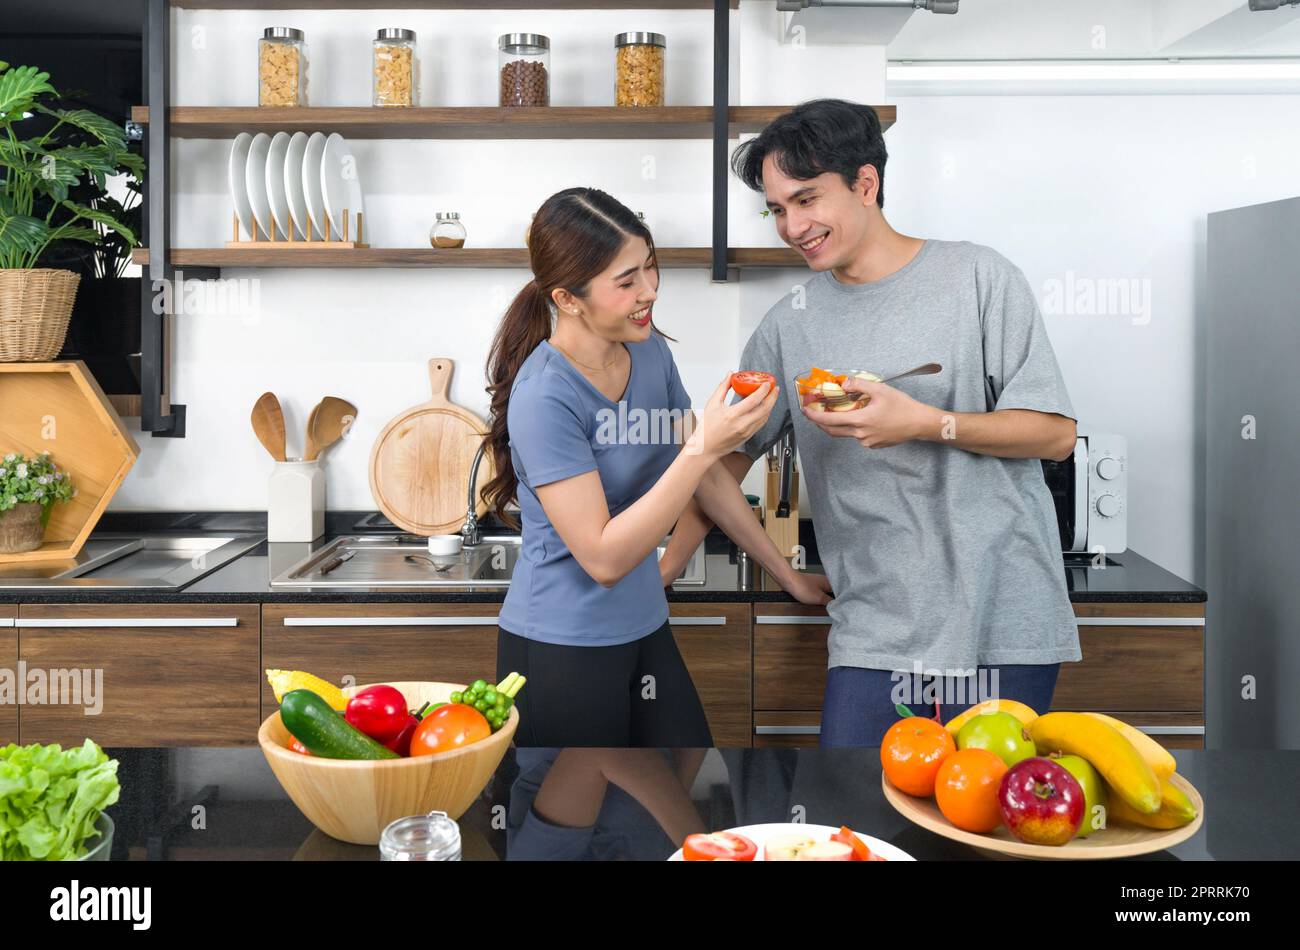 Le coppie asiatiche passano del tempo insieme in cucina. Giovane donna che mangia pomodoro mentre il suo ragazzo tiene una ciotola per insalata. Sul bancone è disponibile una varietà di frutta e verdura. Foto Stock